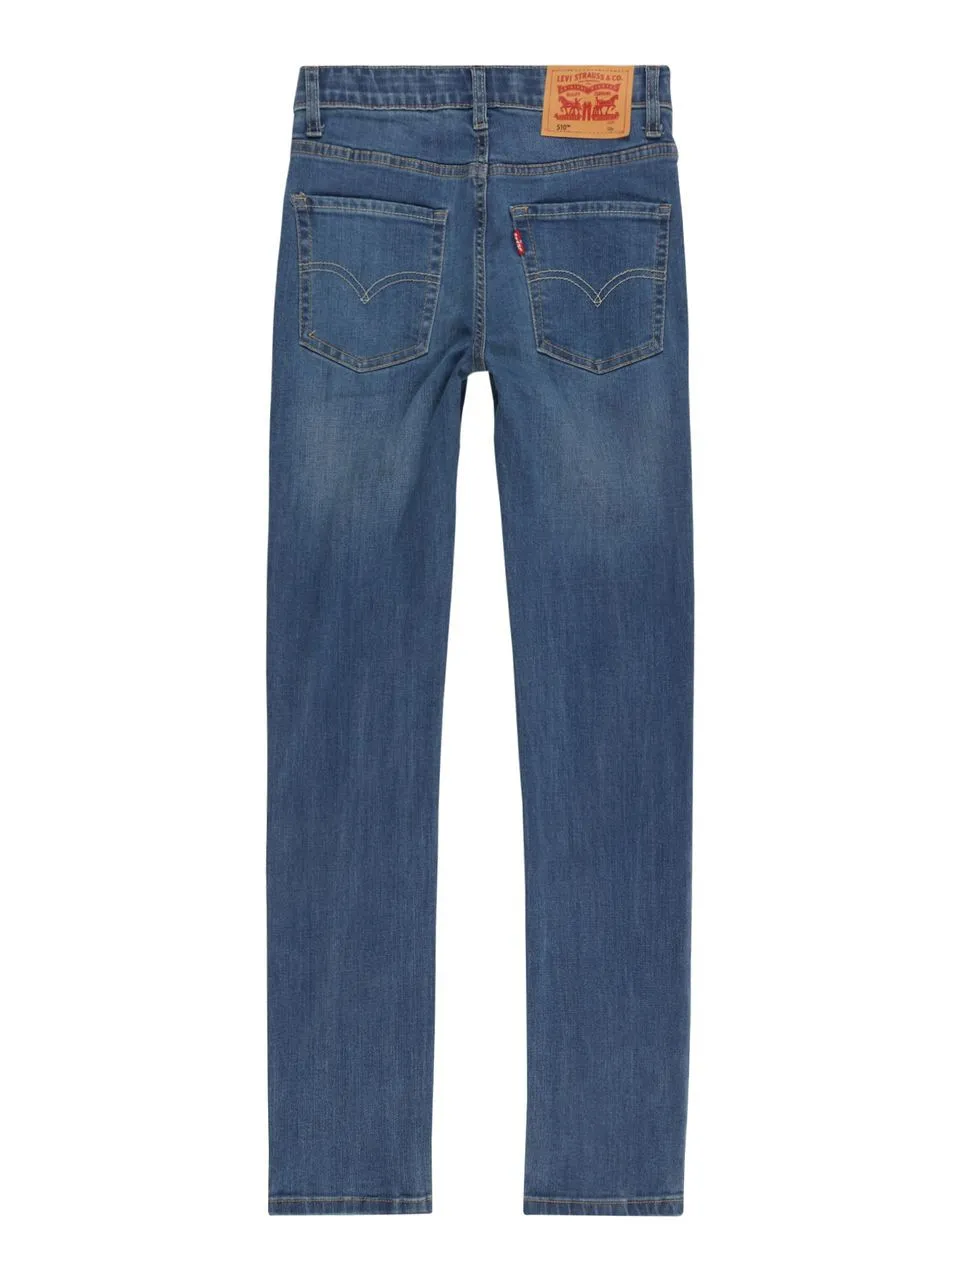 Levi's Lvb 510 eco perforance jeans